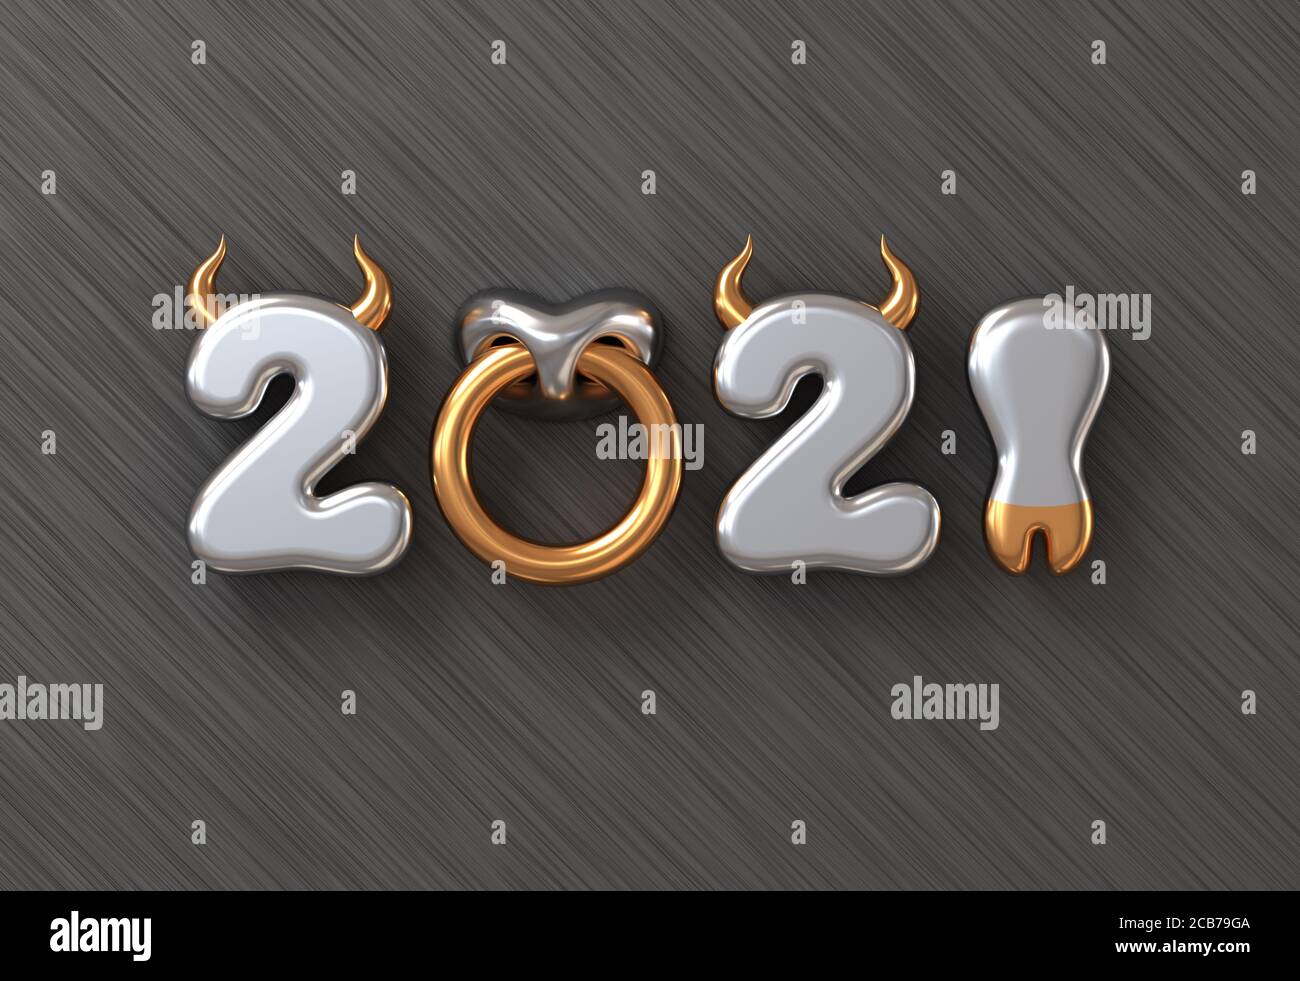 2021 con números como cuernos de Toro, Hoof y Nose Ring sobre fondo metálico. Concepto de año Nuevo Chino del Ox. Ilustración 3D. Foto de stock